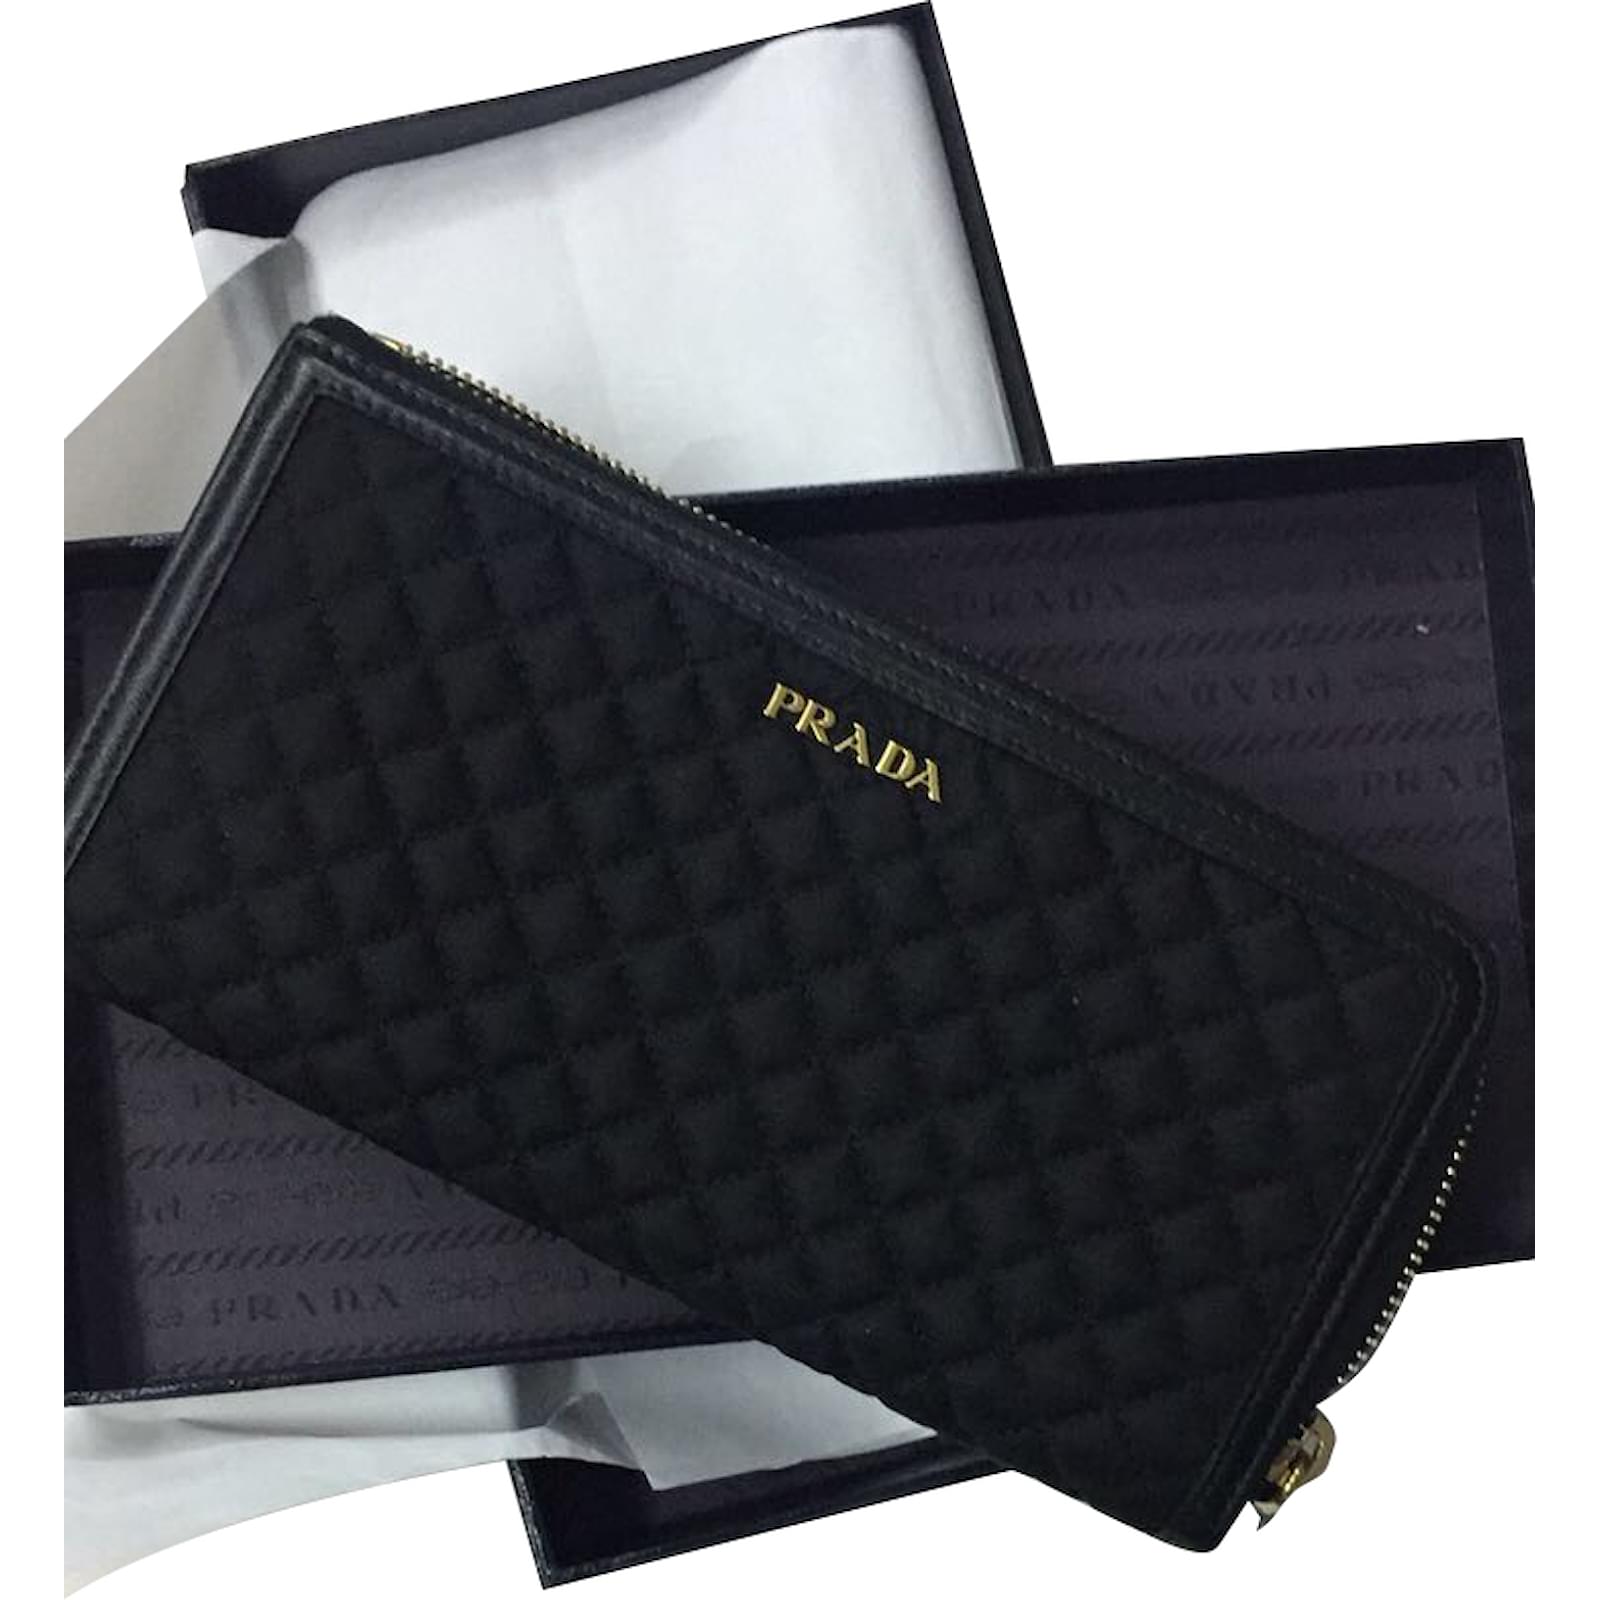 Prada prada wallet nylon and leather 